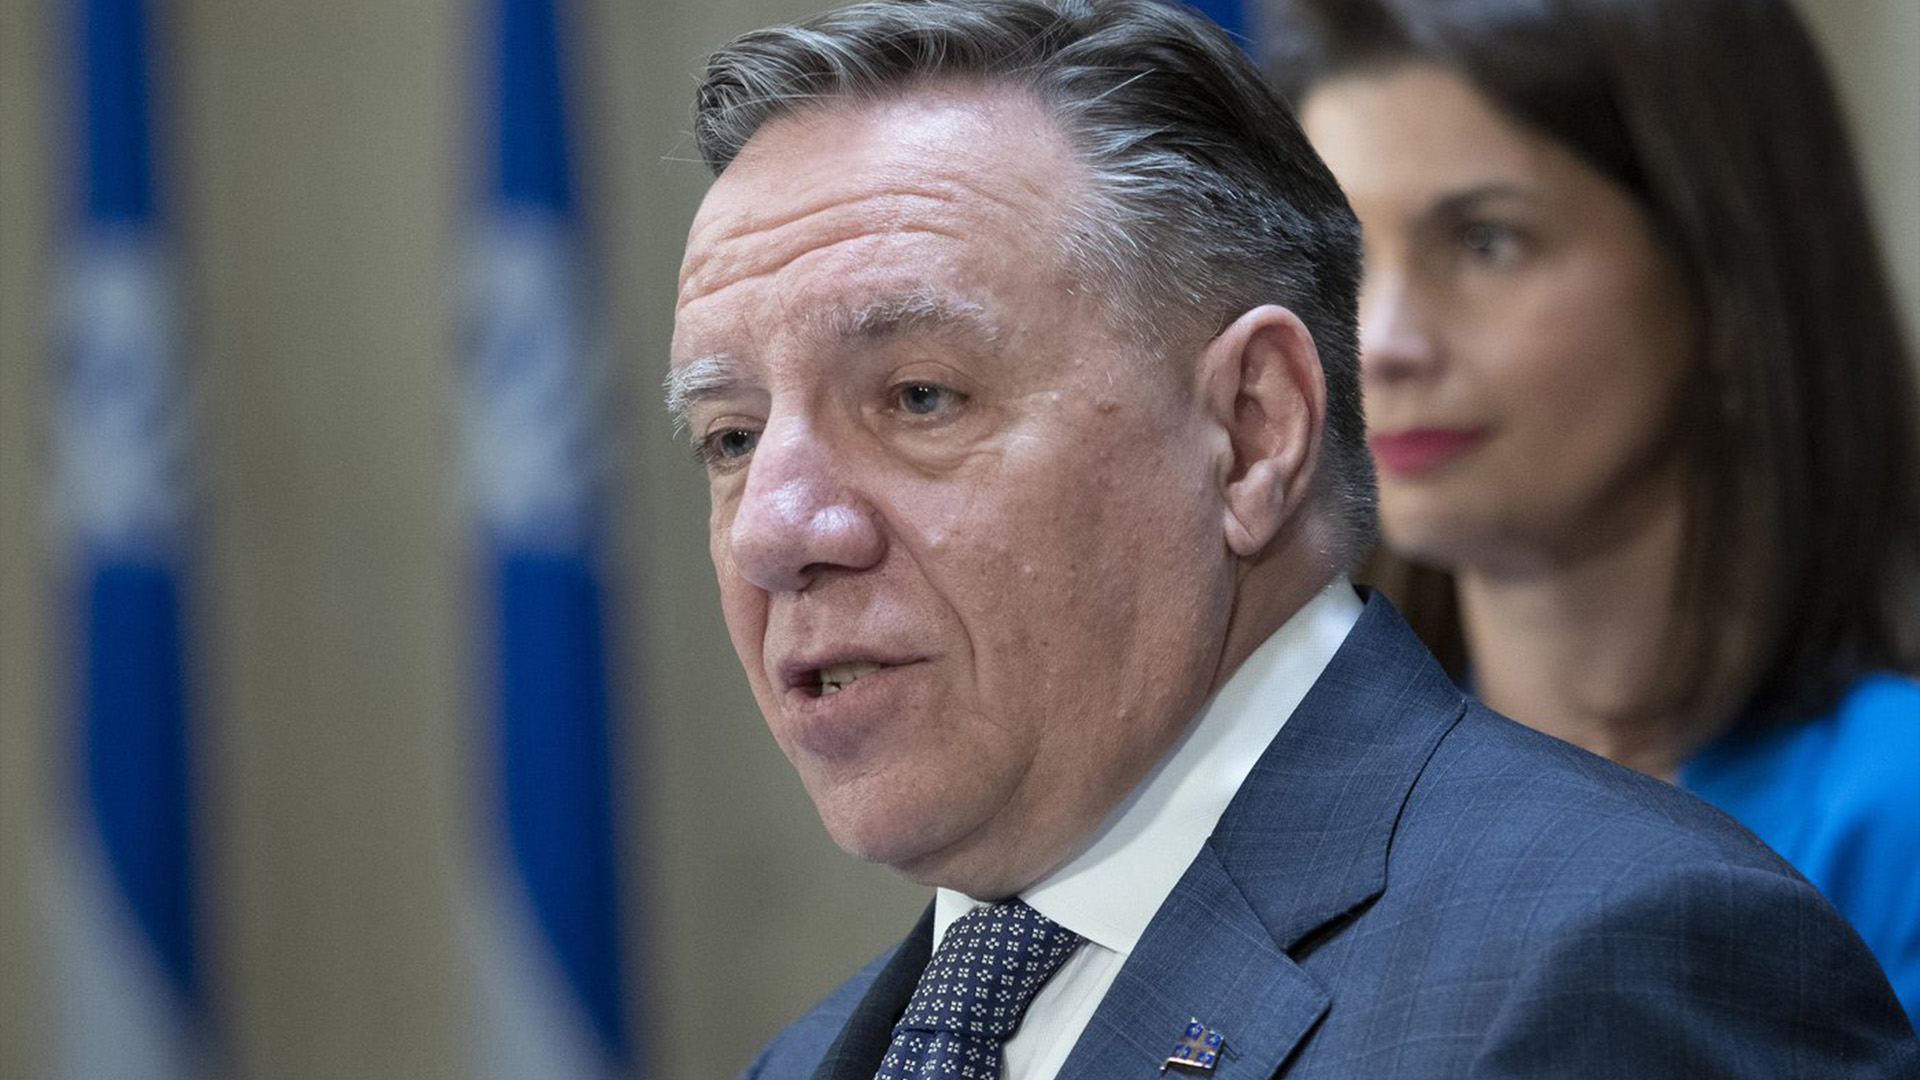 Le premier ministre du Québec, François Legault, lève les yeux alors qu'il évalue la session de clôture lors d'une conférence de presse, le vendredi 10 juin 2022 à l'Assemblée législative de Québec.